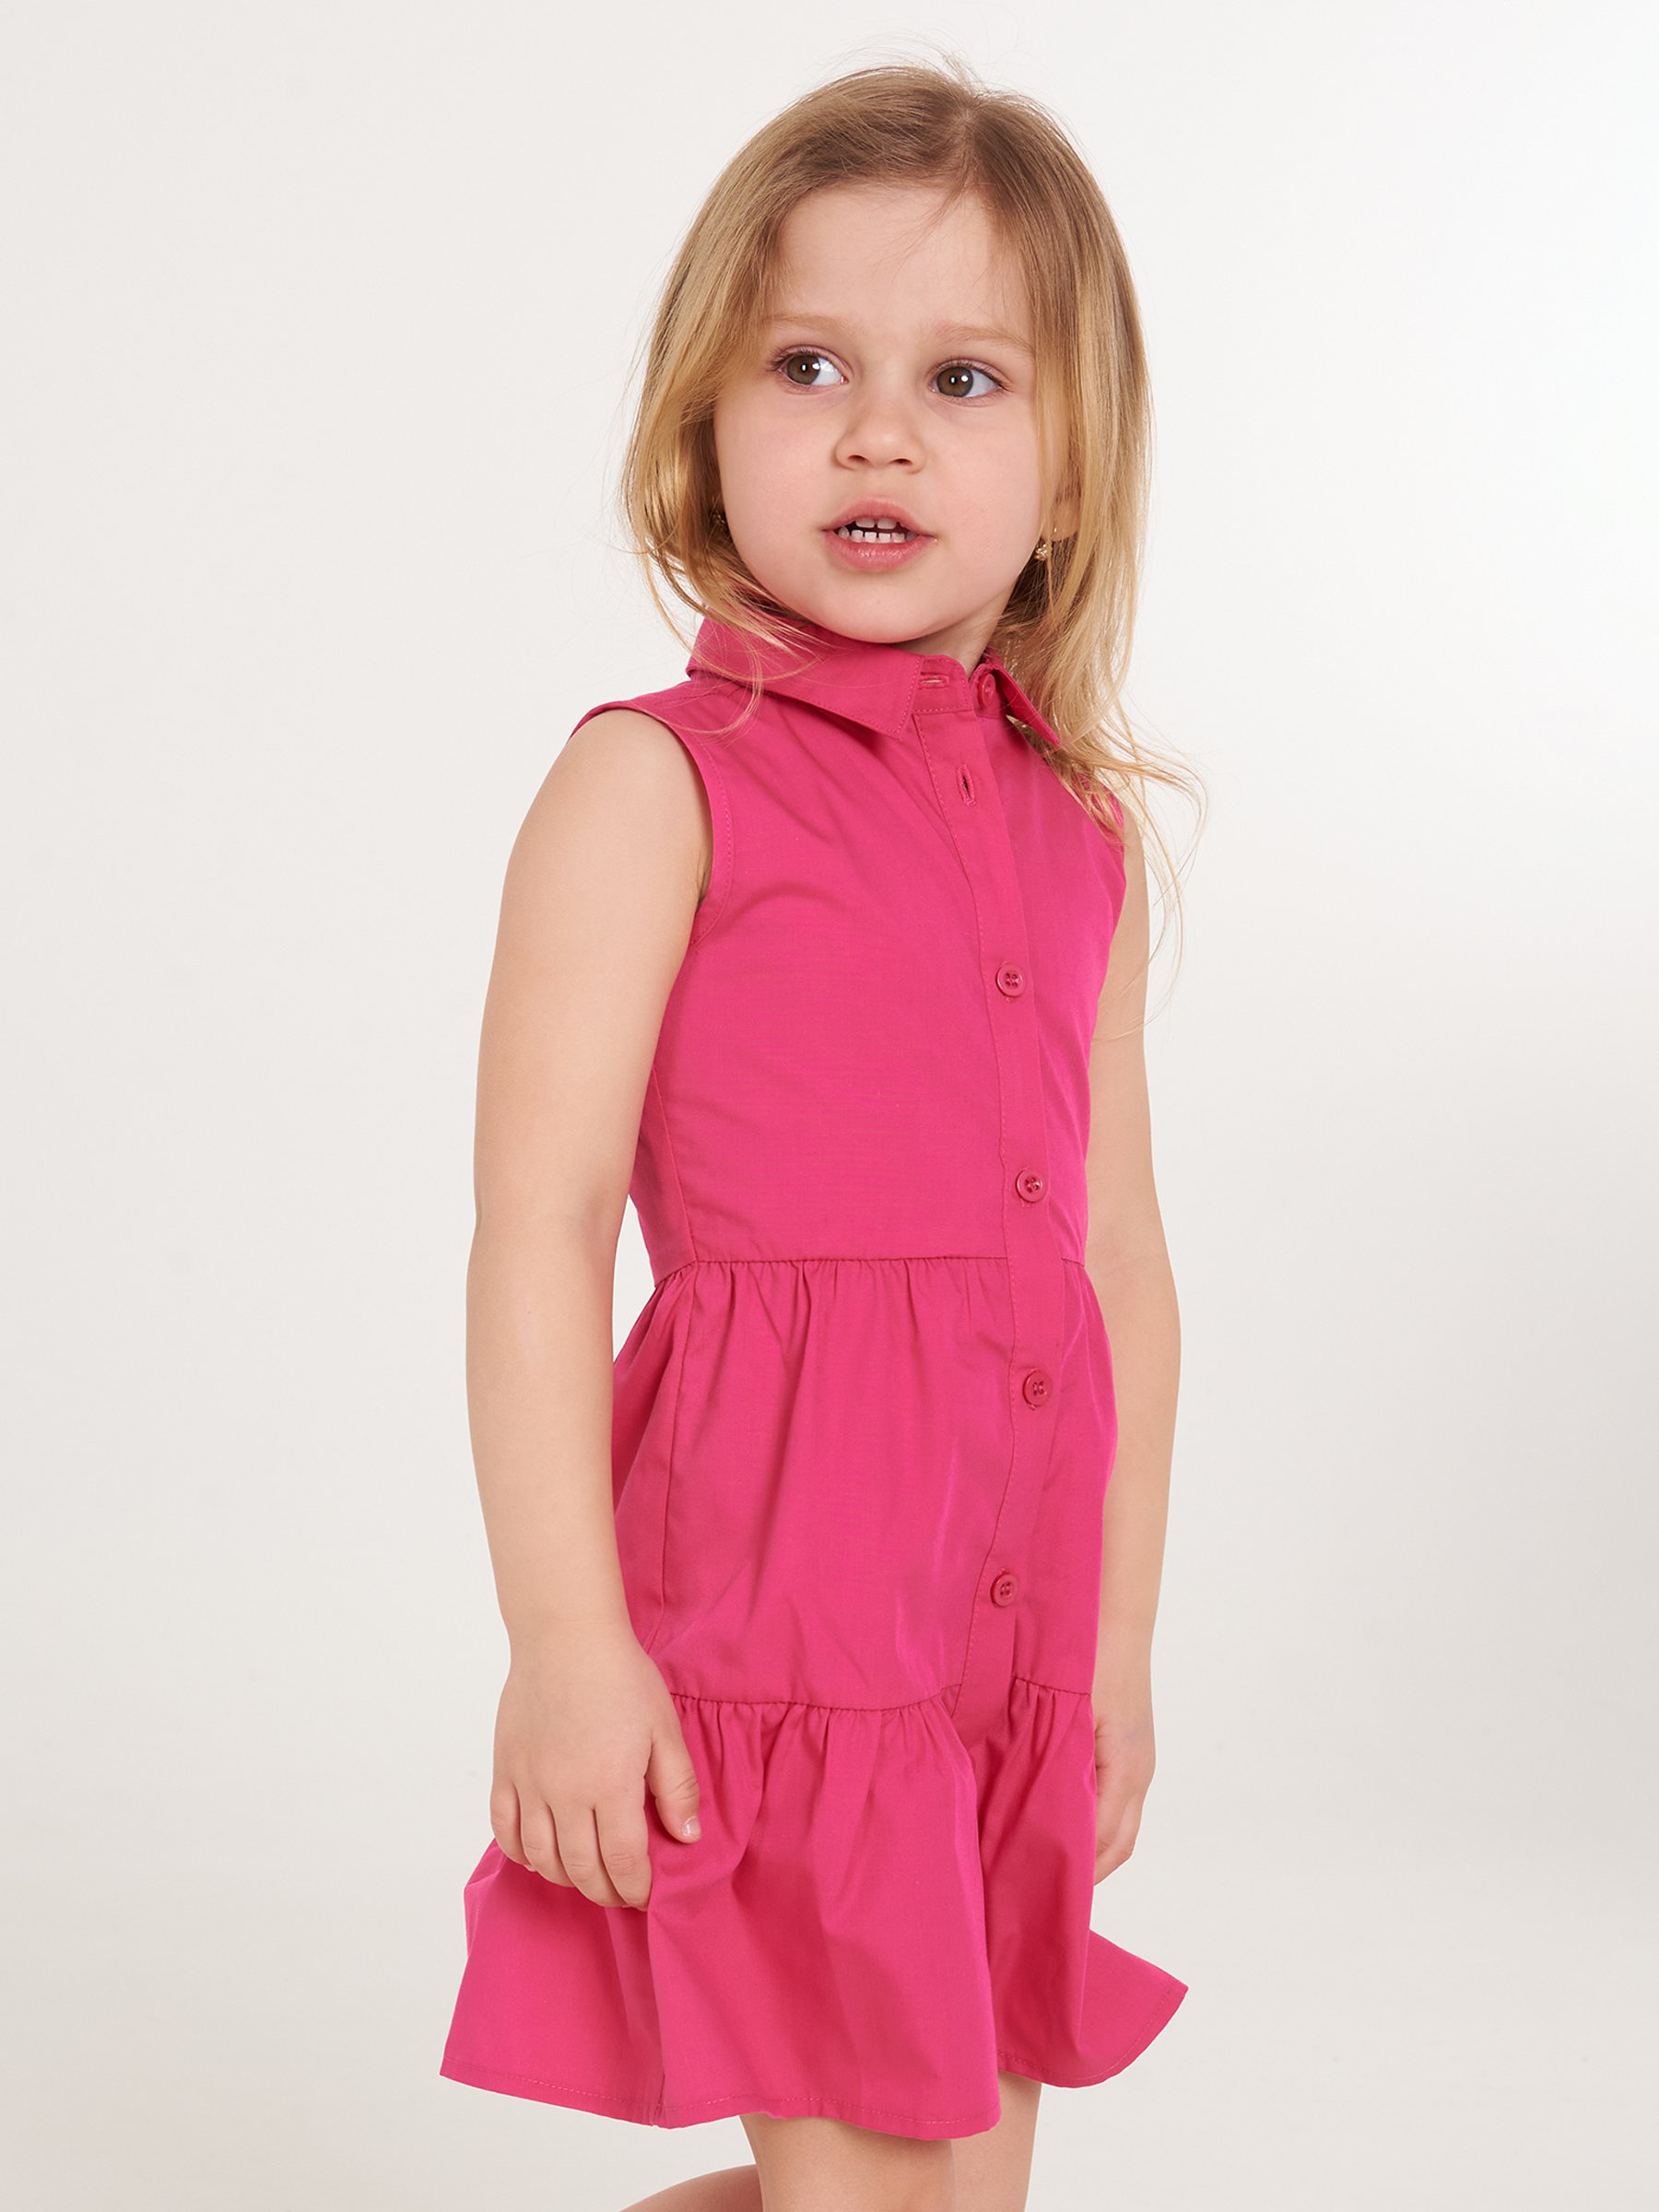 vzrušení vynález Pelagický dětské šaty pro děti ve věku 10 11 Neurčitý ...